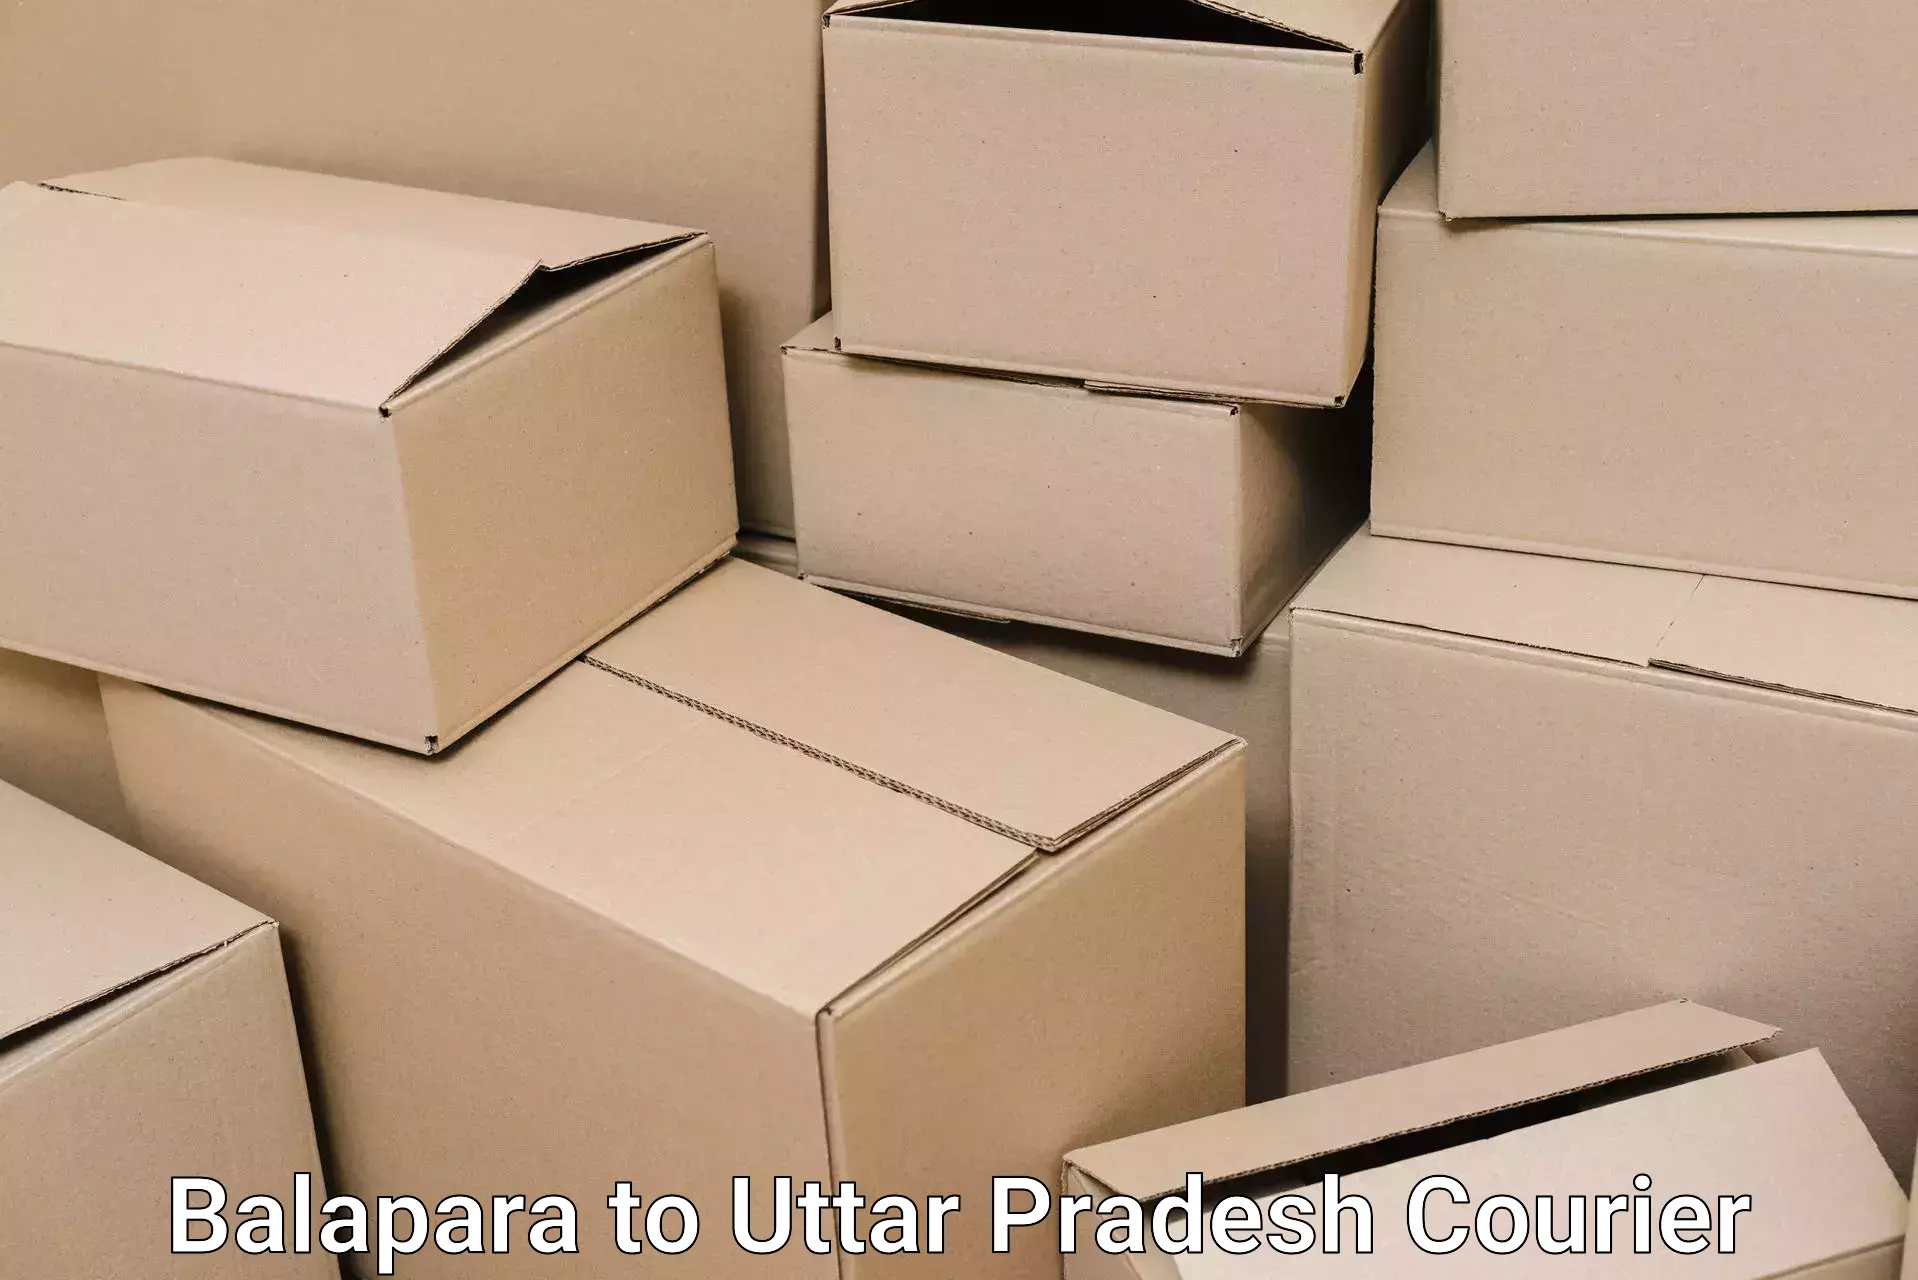 Furniture moving service Balapara to Uttar Pradesh